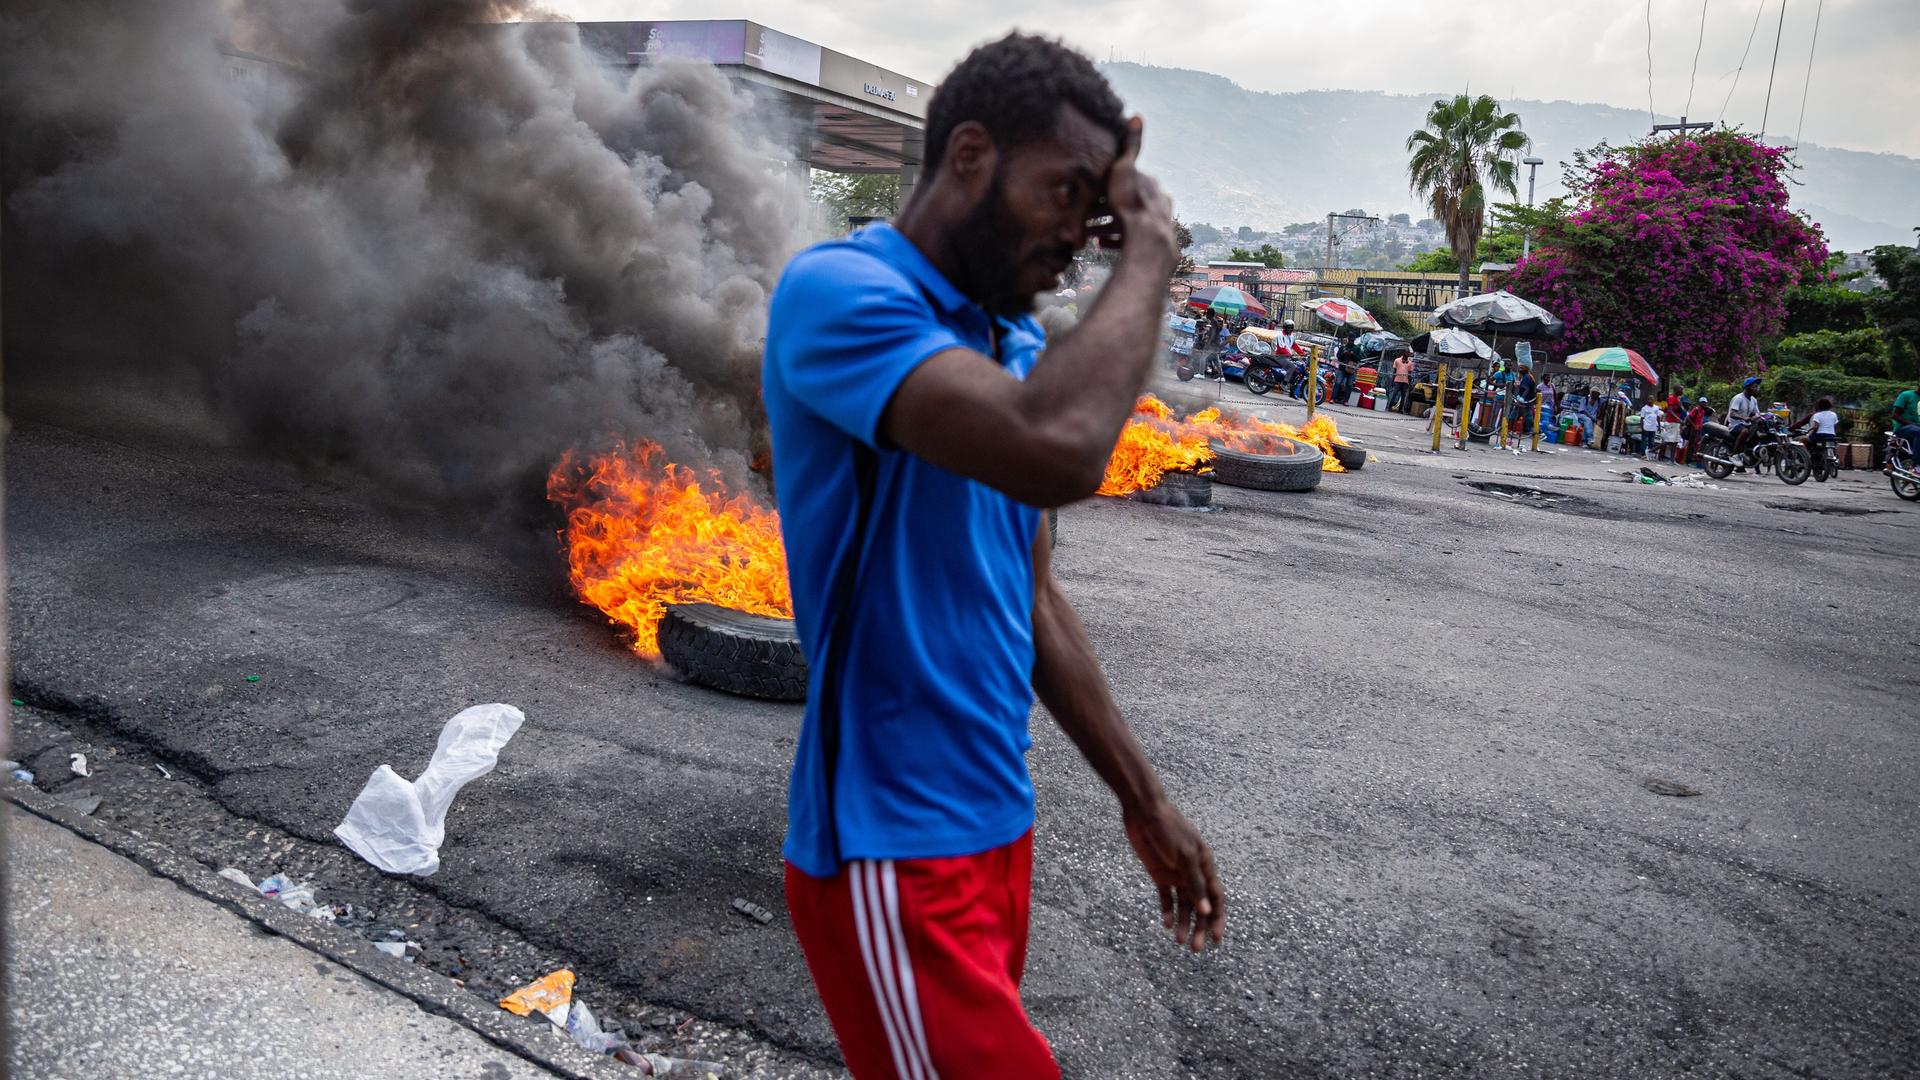 Ein Mann läuft an brennenden Autoreifen in derHauptstadt von Haiti Port-au-Prince vorbei.